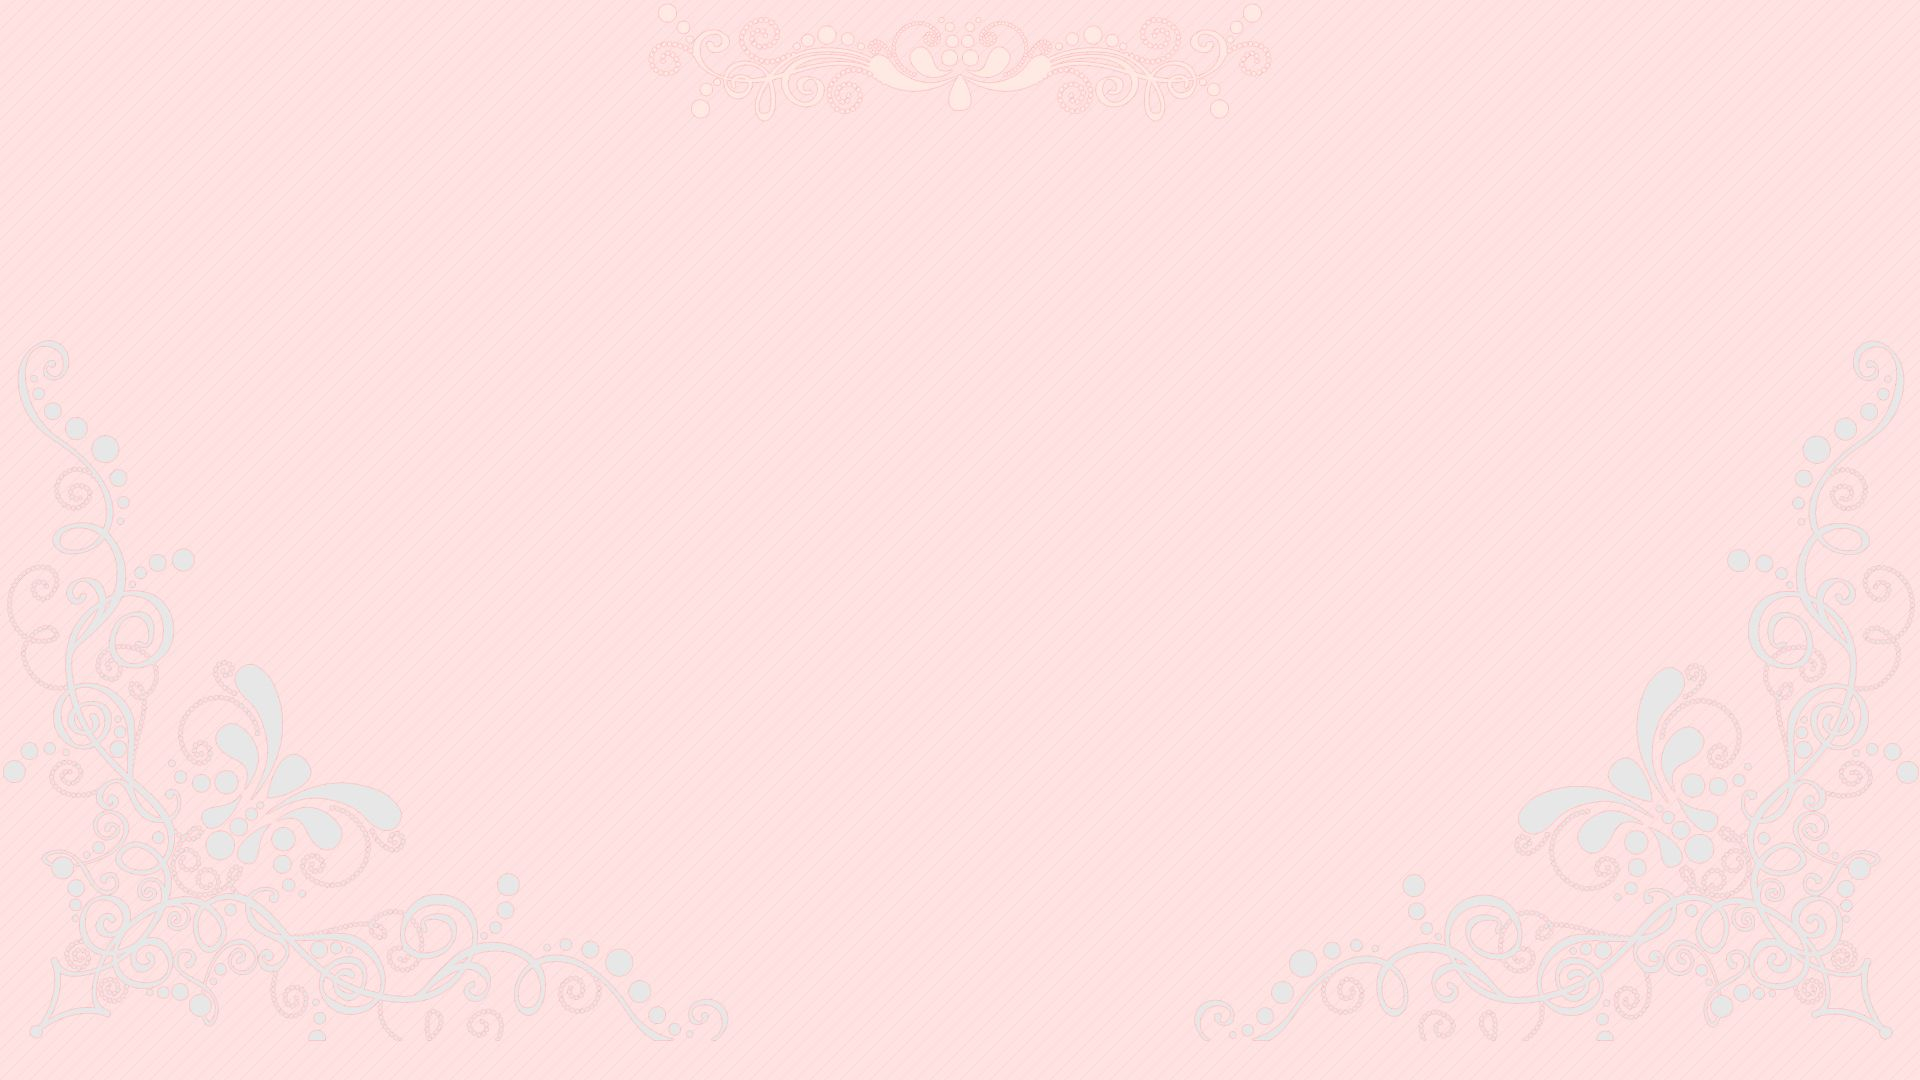 1920x1080 Pretty Pastel Pink Desktop Wallpaper | Pink wallpaper backgrounds, Pastel pink wallpaper, Pink wallpaper laptop